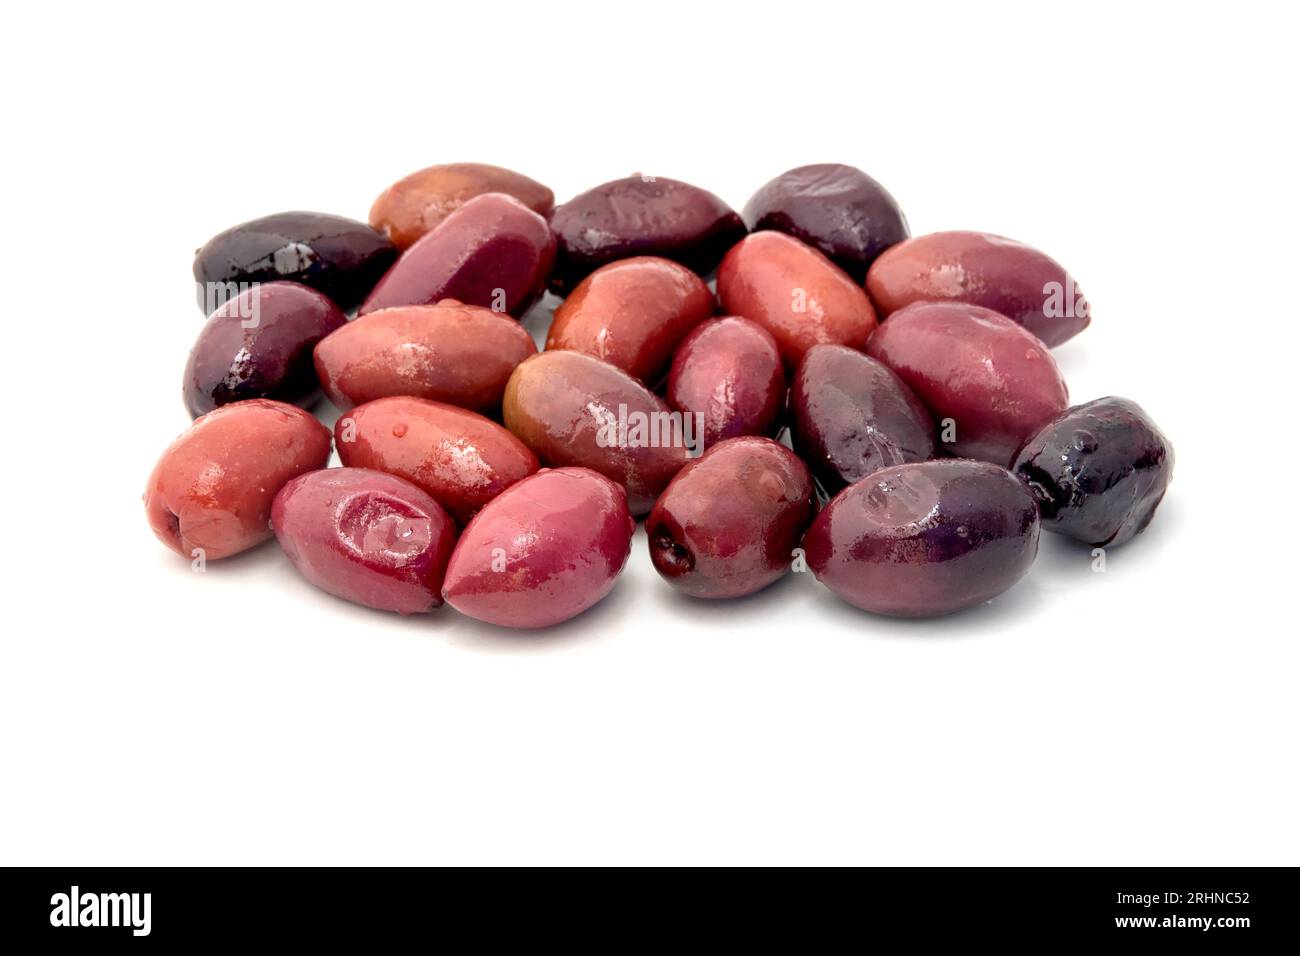 Kalamata olives on a white background Stock Photo